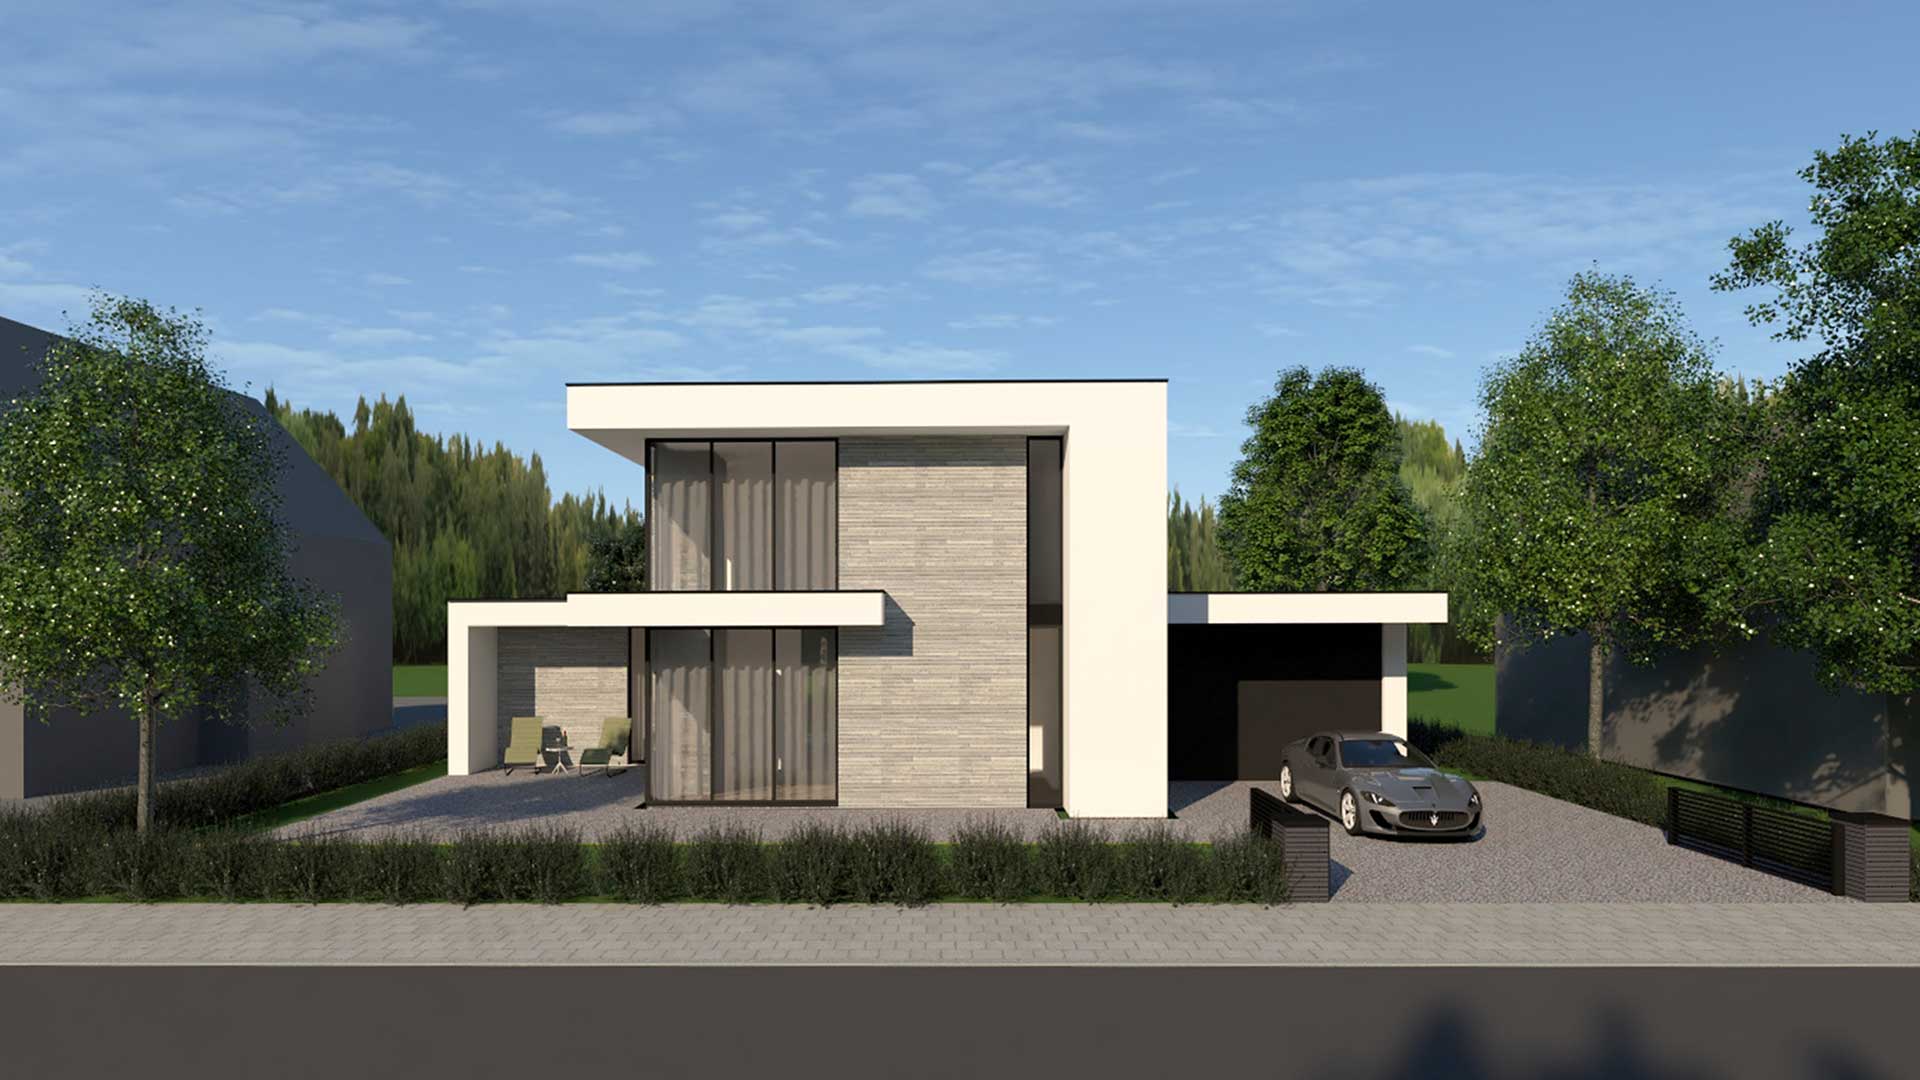 Ontwerp voor duurzame BENG villa op vrije kavel nieuwbouwwijk Zestienhoeven te Rotterdam door architect Maxim Winkelaar.